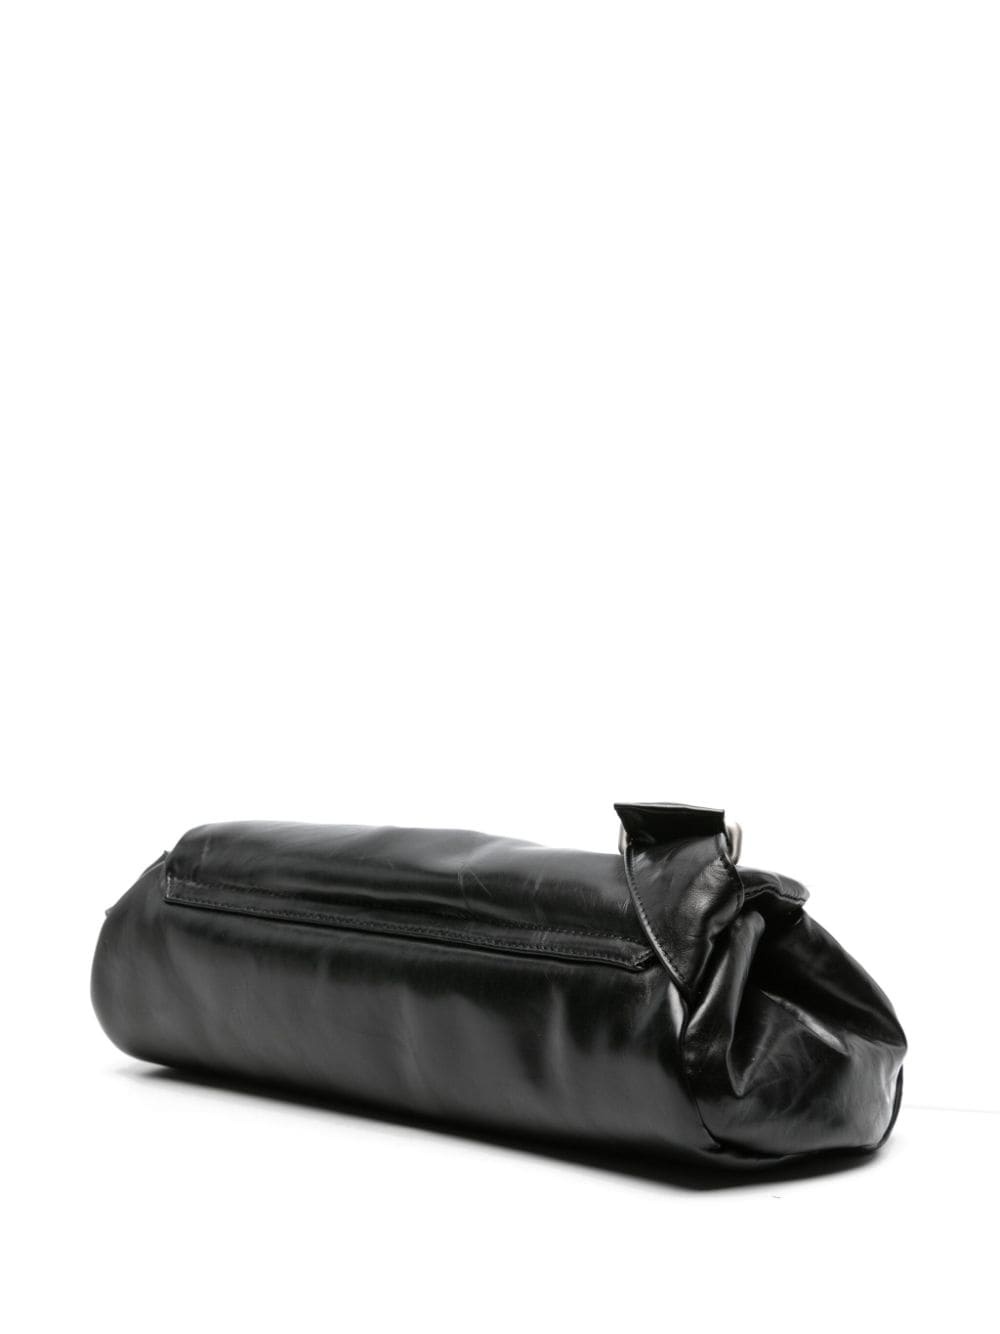 large Cannolo shoulder bag - 3